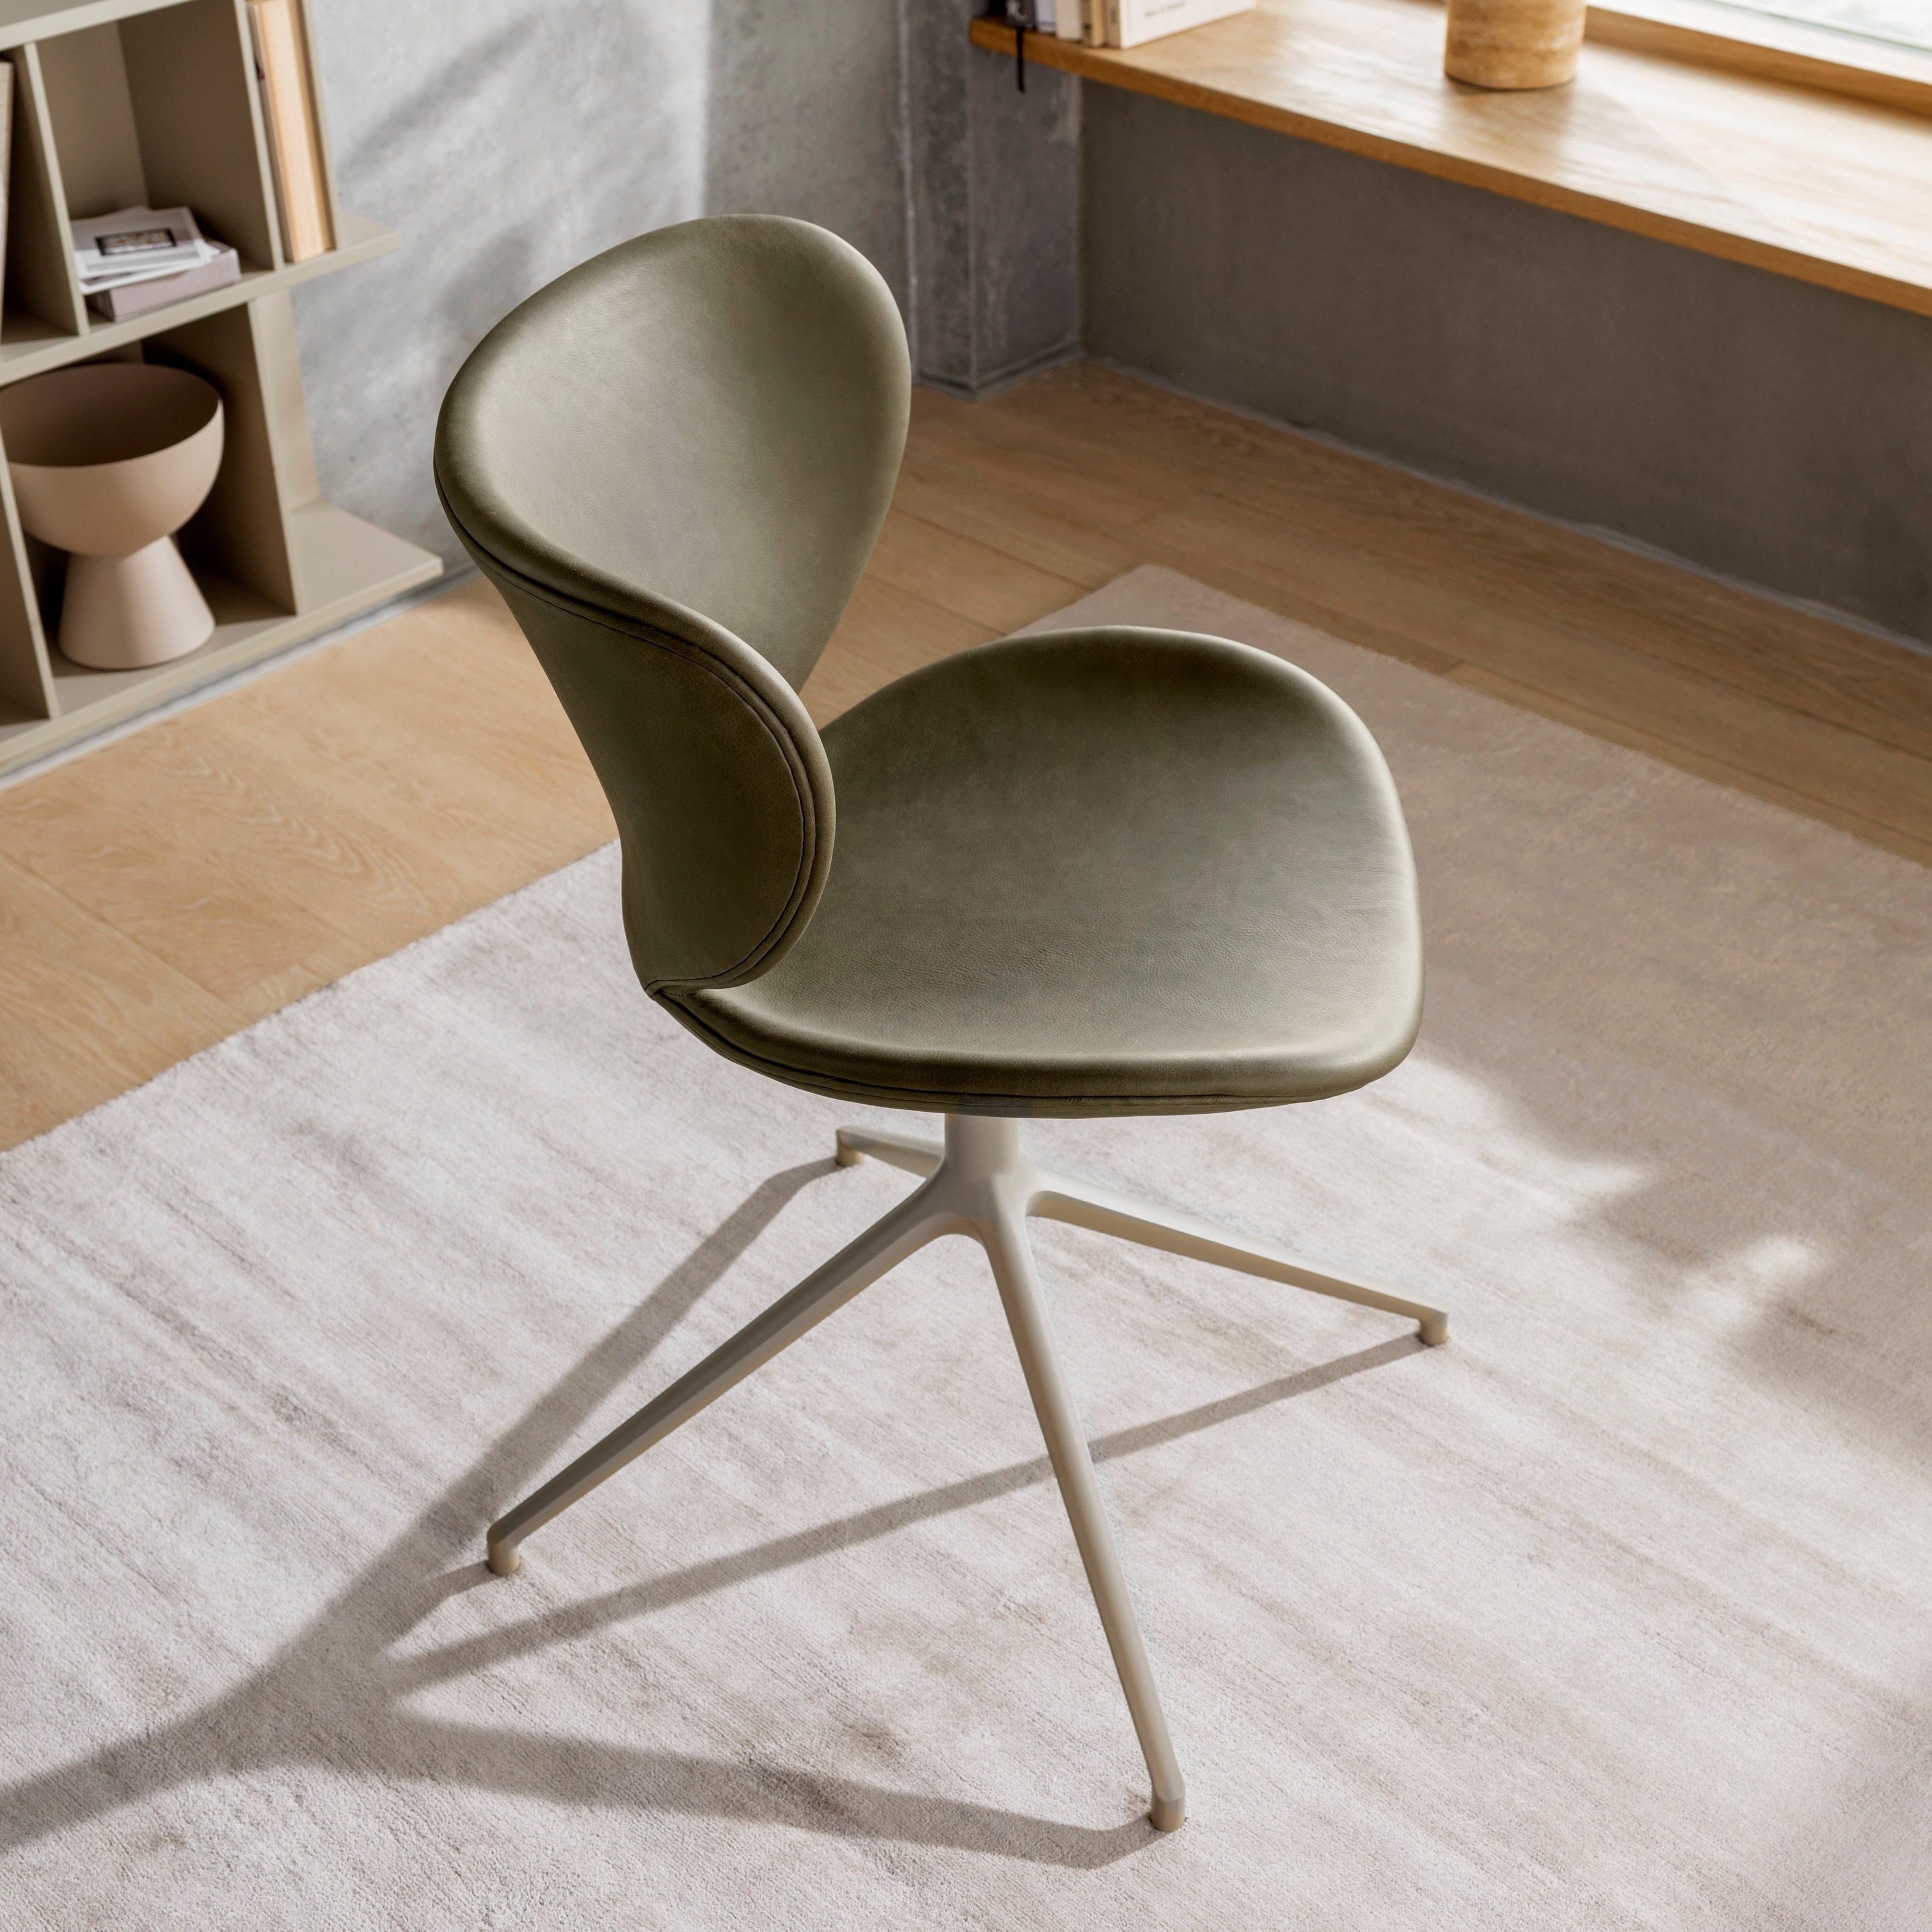 Olivgrüner Stuhl mit Metallgestell in einem sonnigen Raum mit Holzregalen und Fenster.